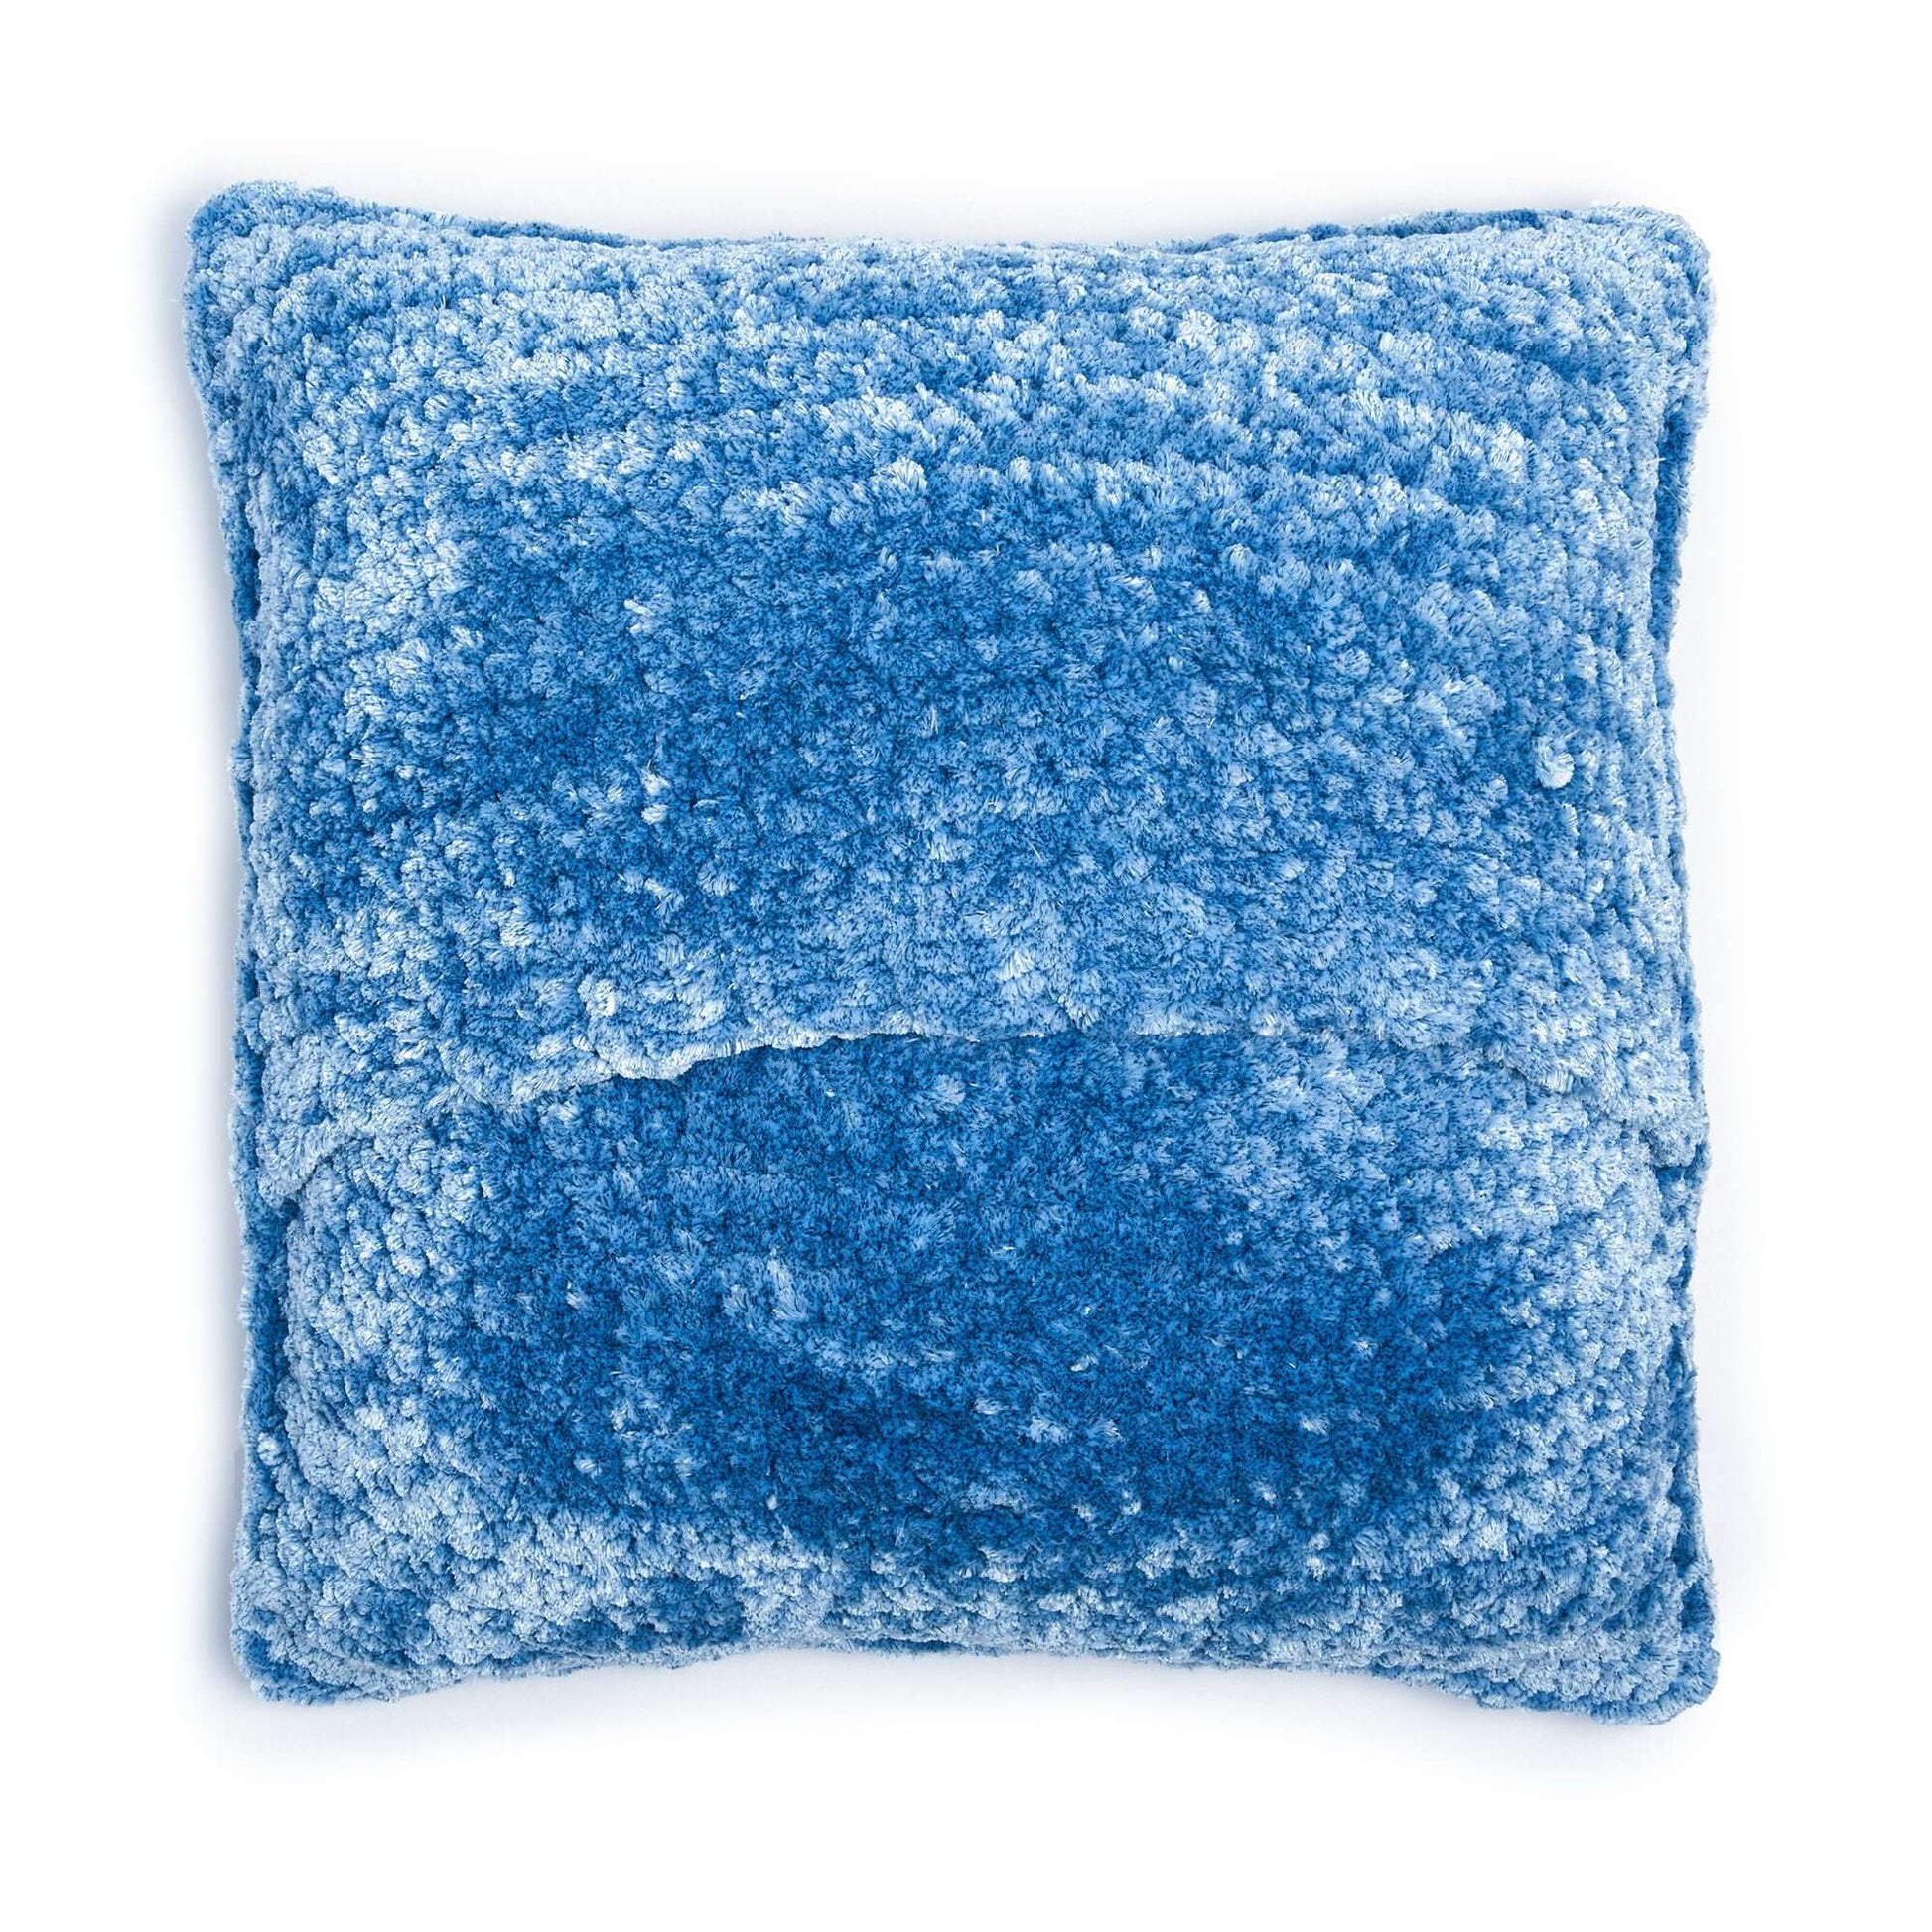 Free Bernat Kiss Kiss Velvet Crochet Pillow Pattern